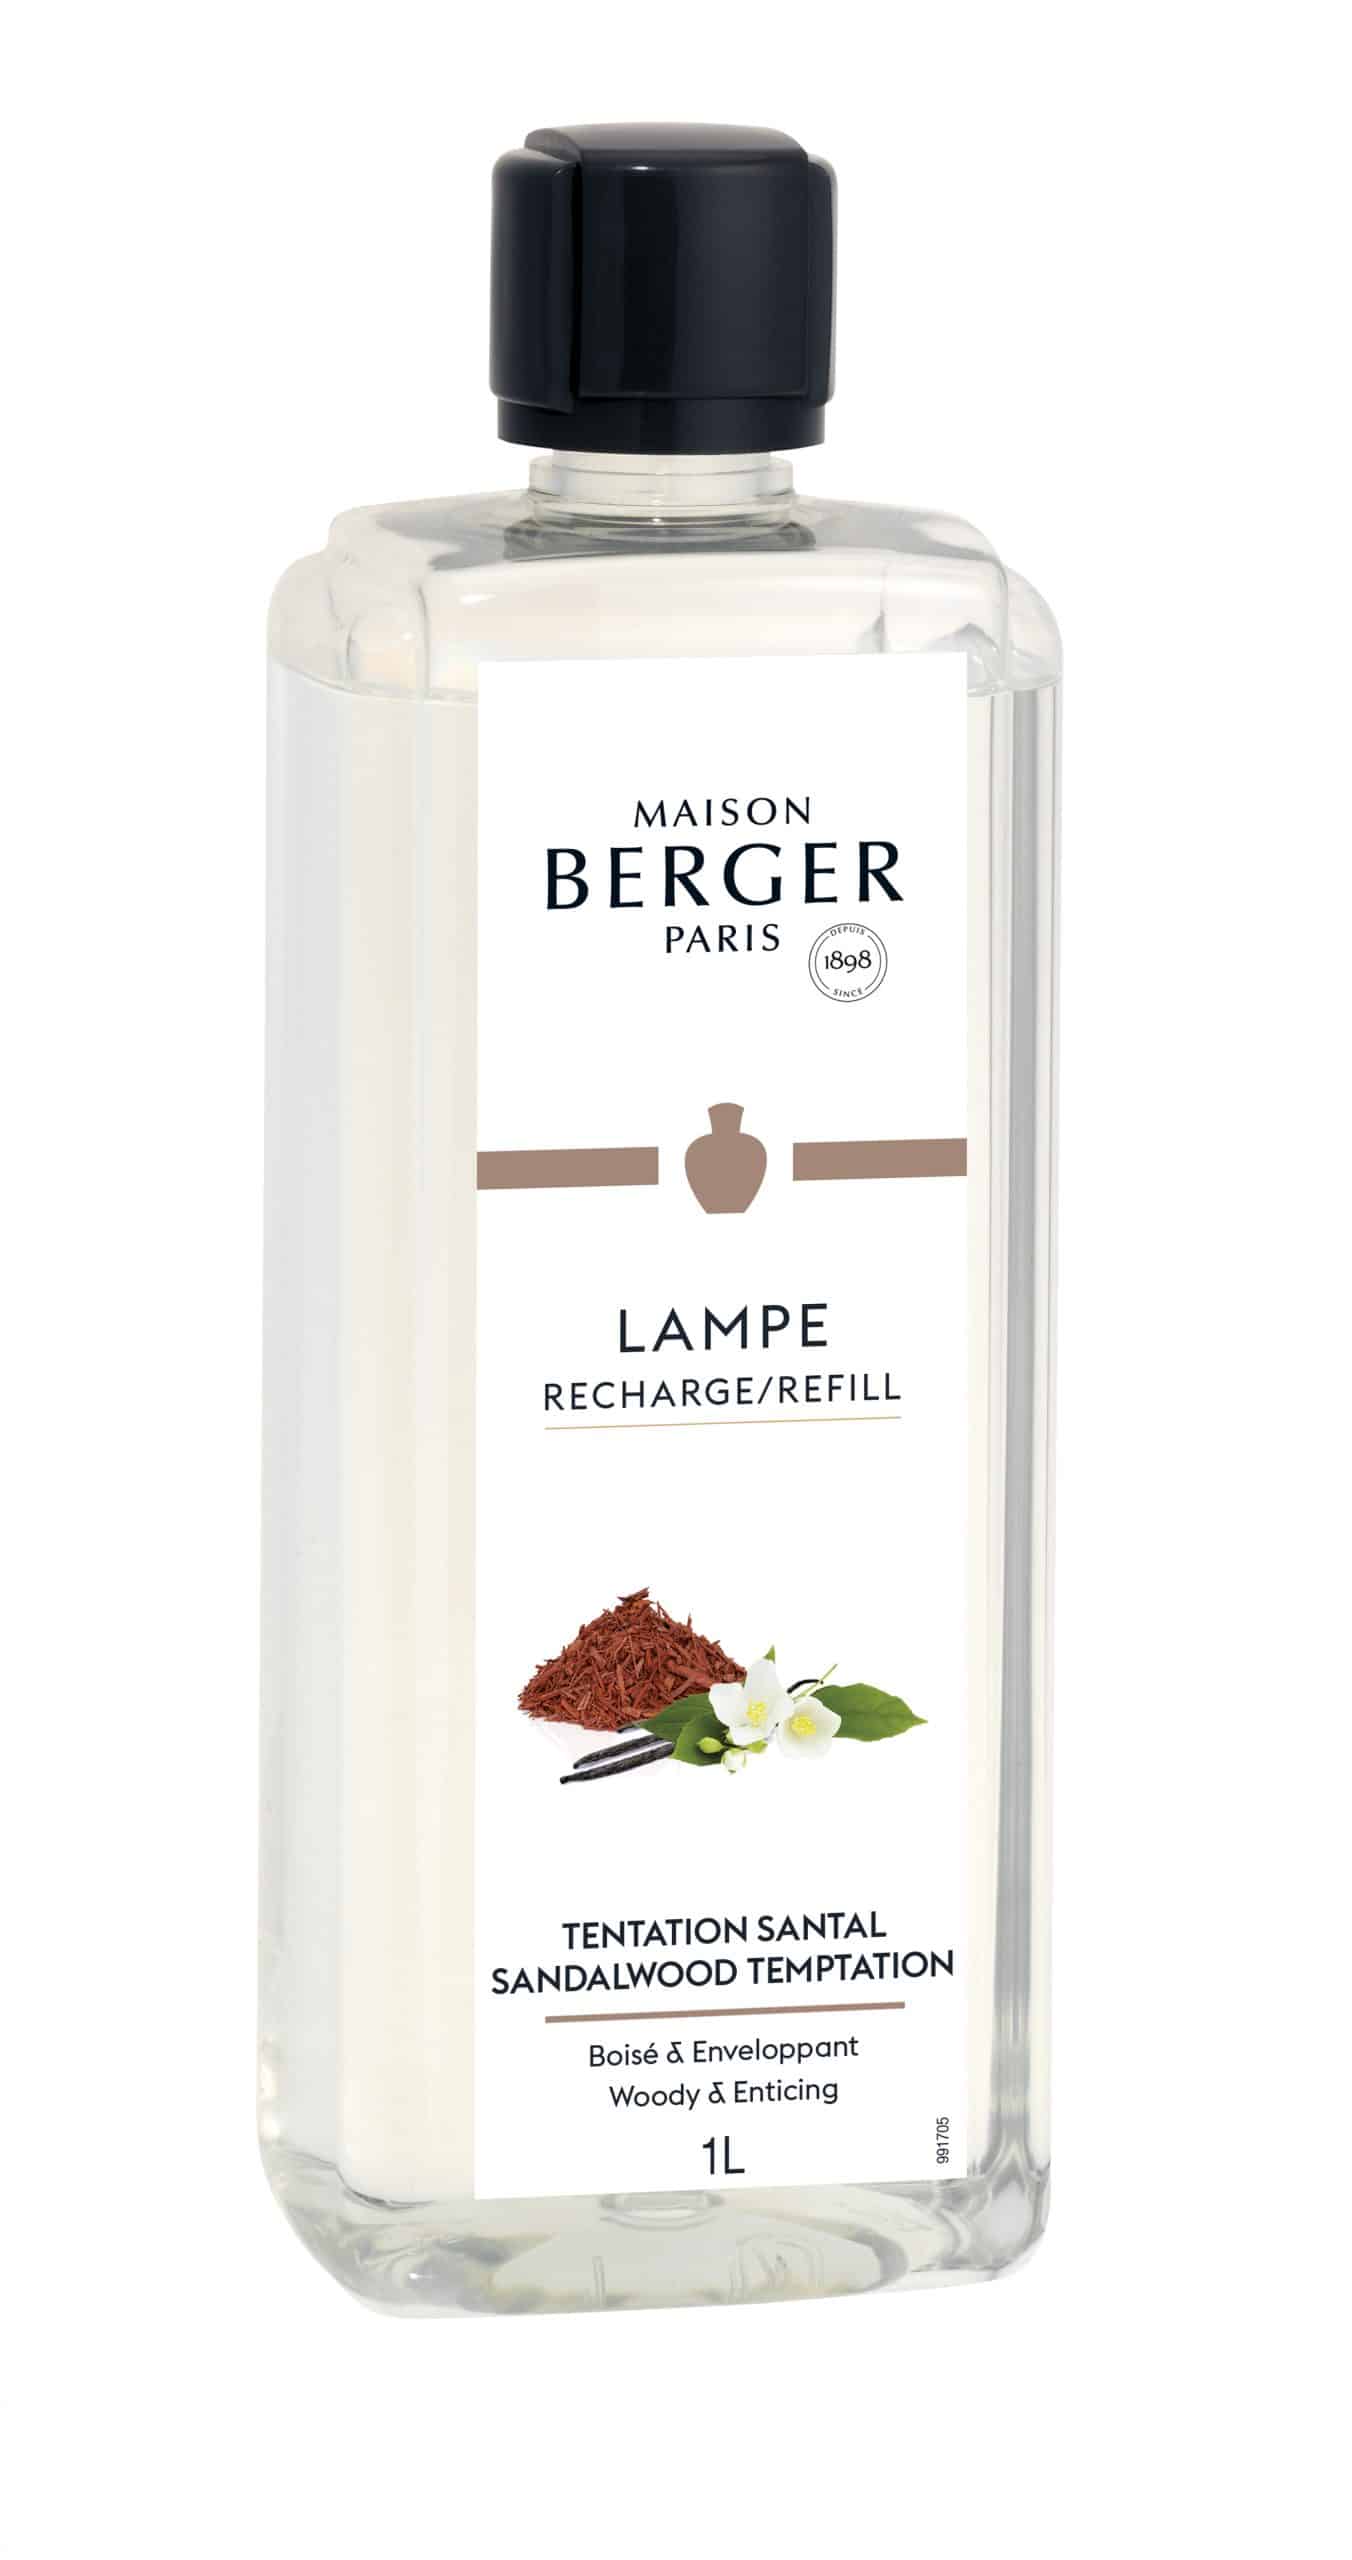 Maison Berger Paris - parfum Sandalwood Temptation - 1 liter